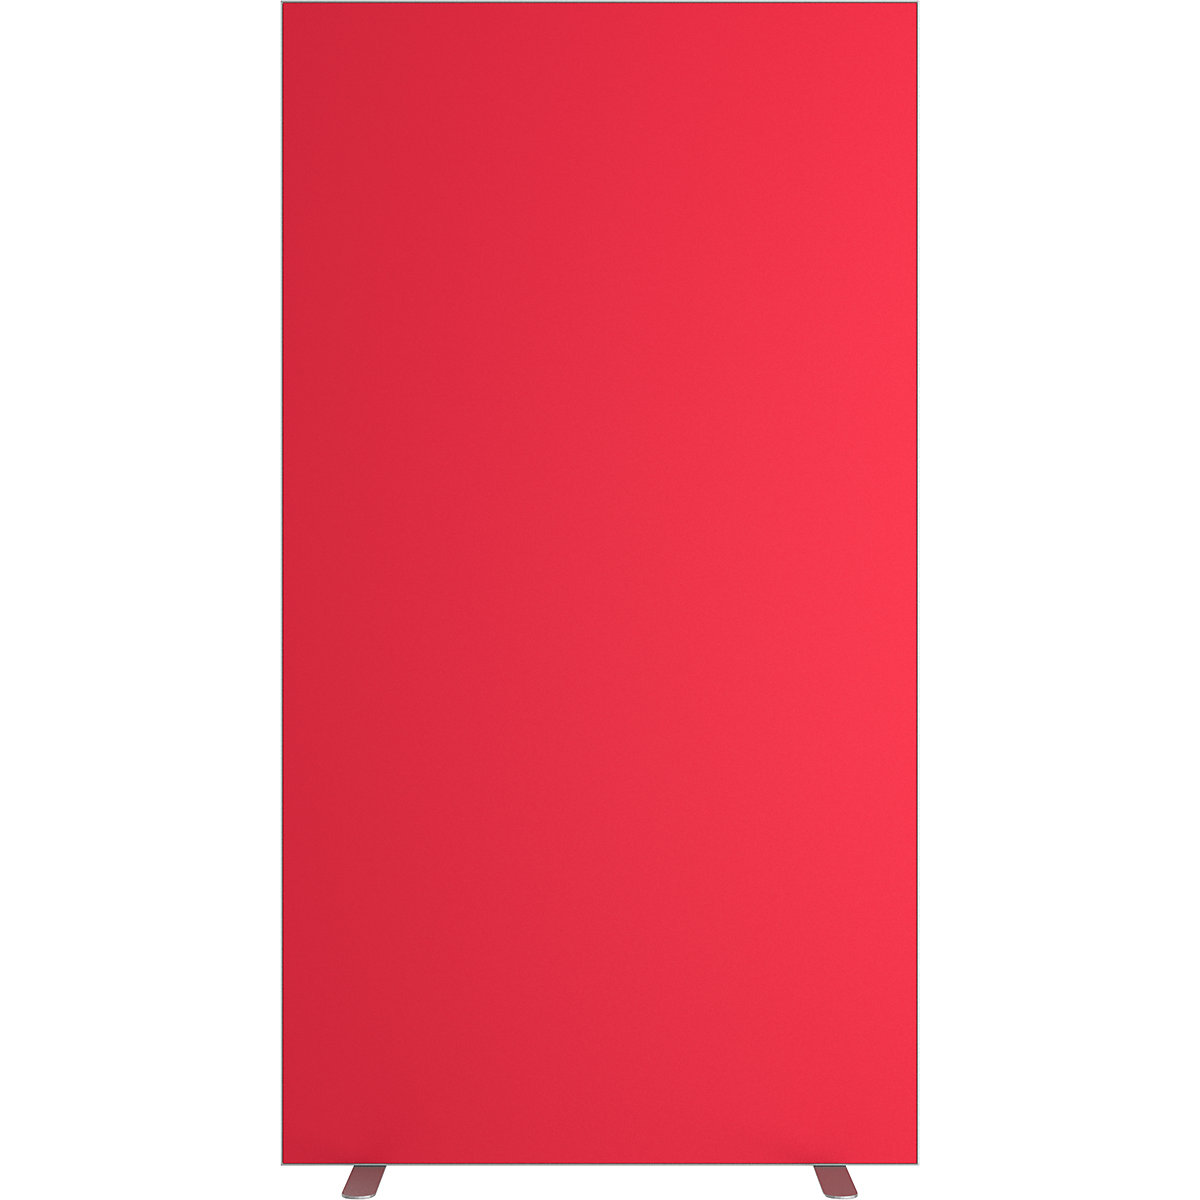 Trennwand easyScreen, einfarbig, mit Schallschutz, rot, Breite 940 mm-13